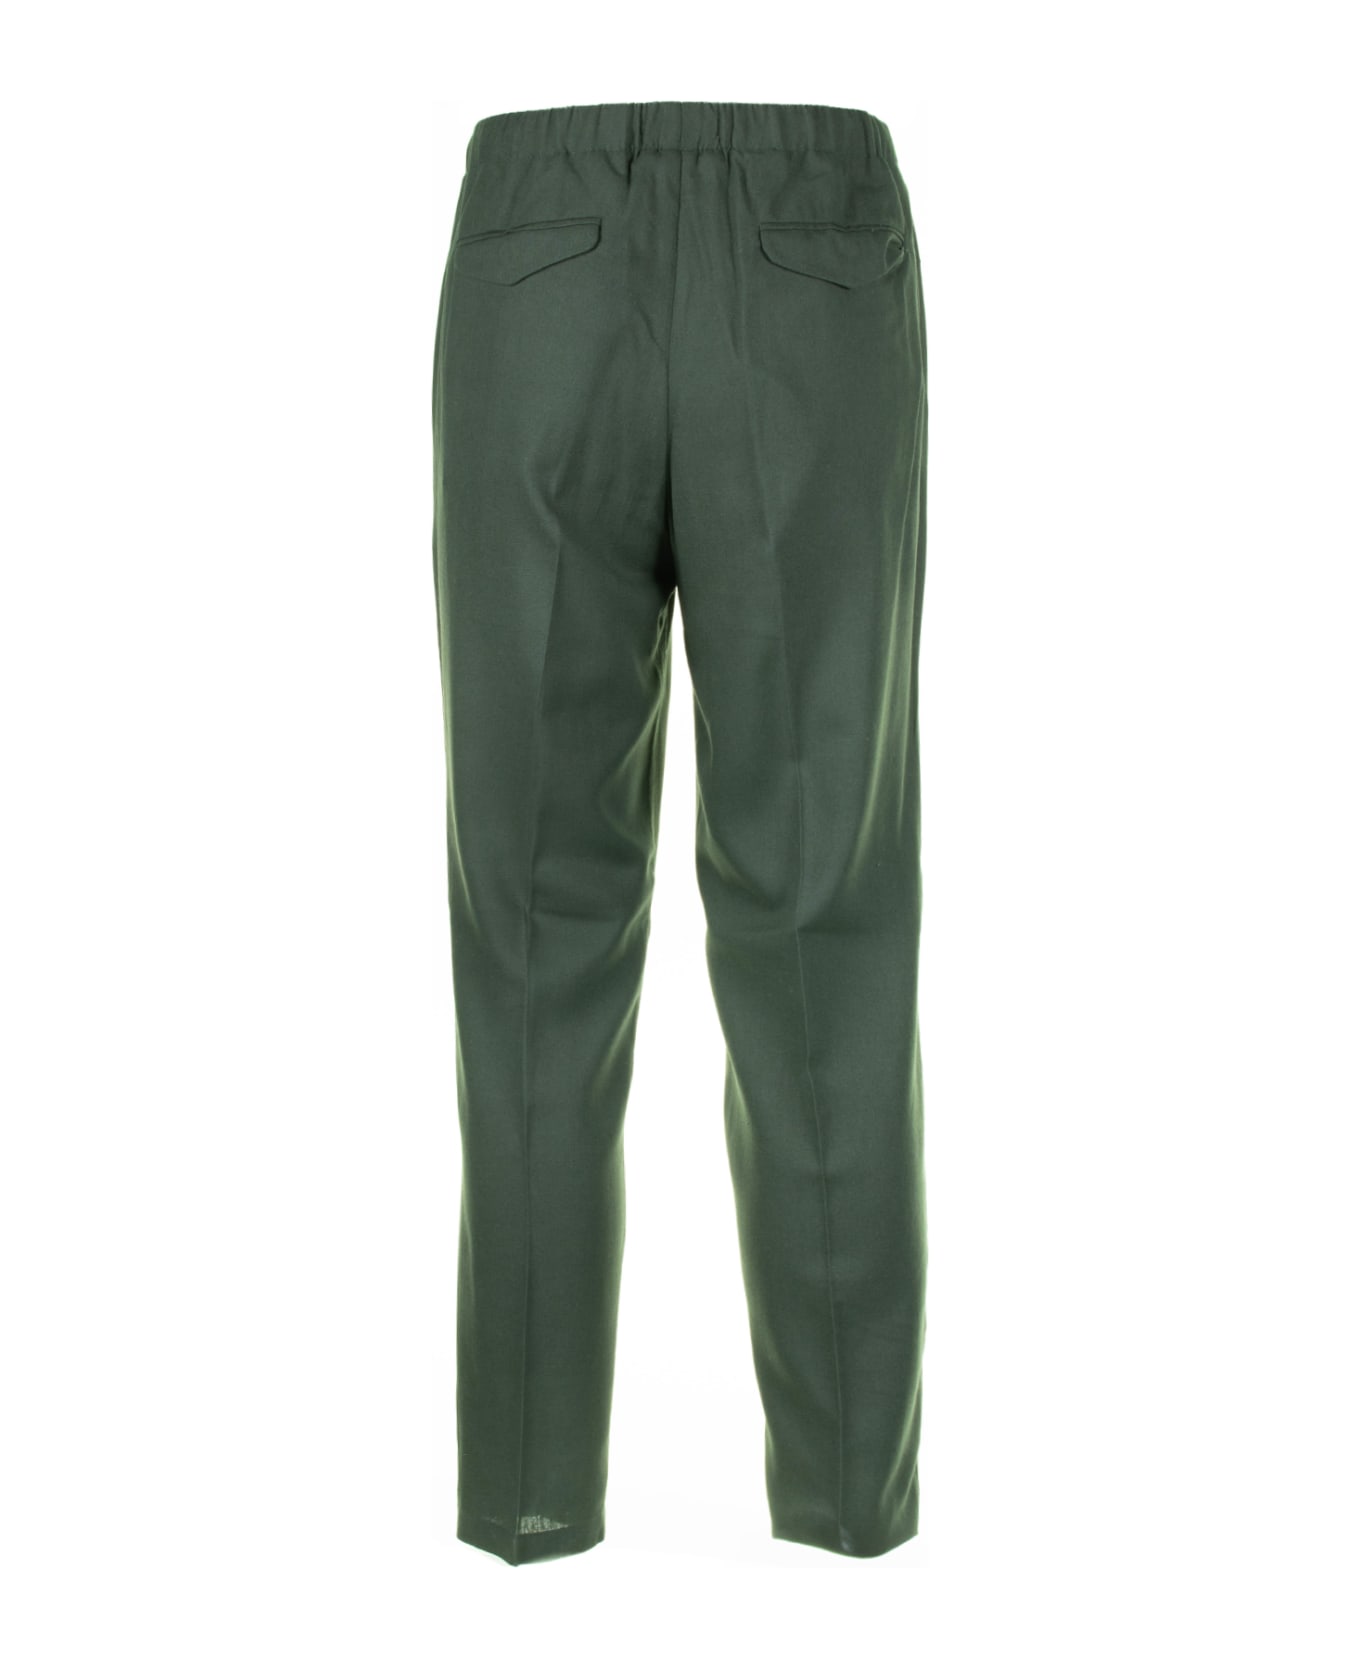 Cruna Green Linen Blend Trousers - VERDE